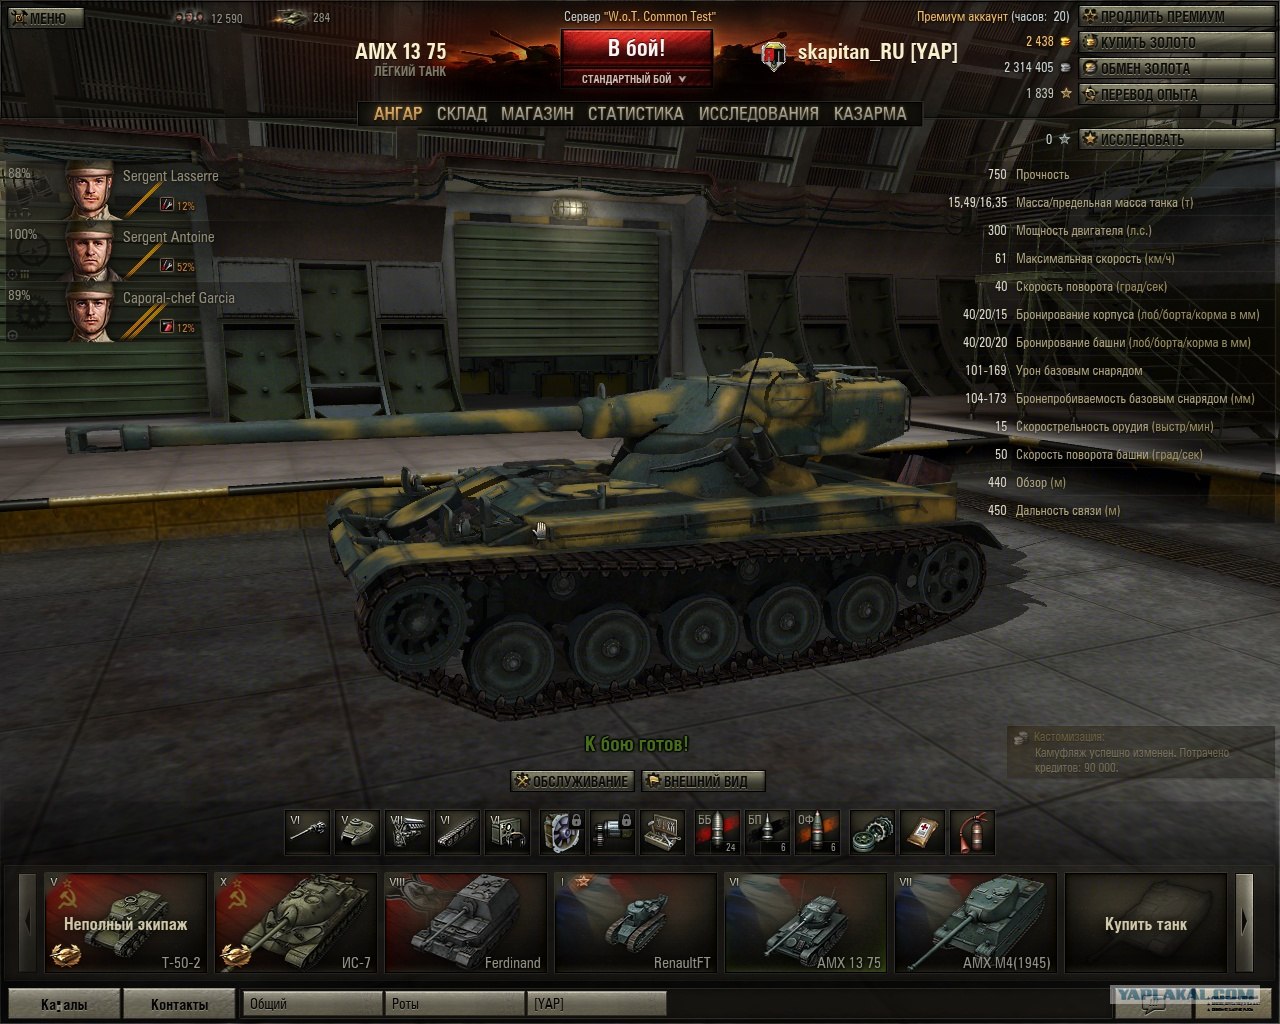 AMX скорострельность. Sherman sa50. 75mm sa50. Т-50 скорость поворота башни.